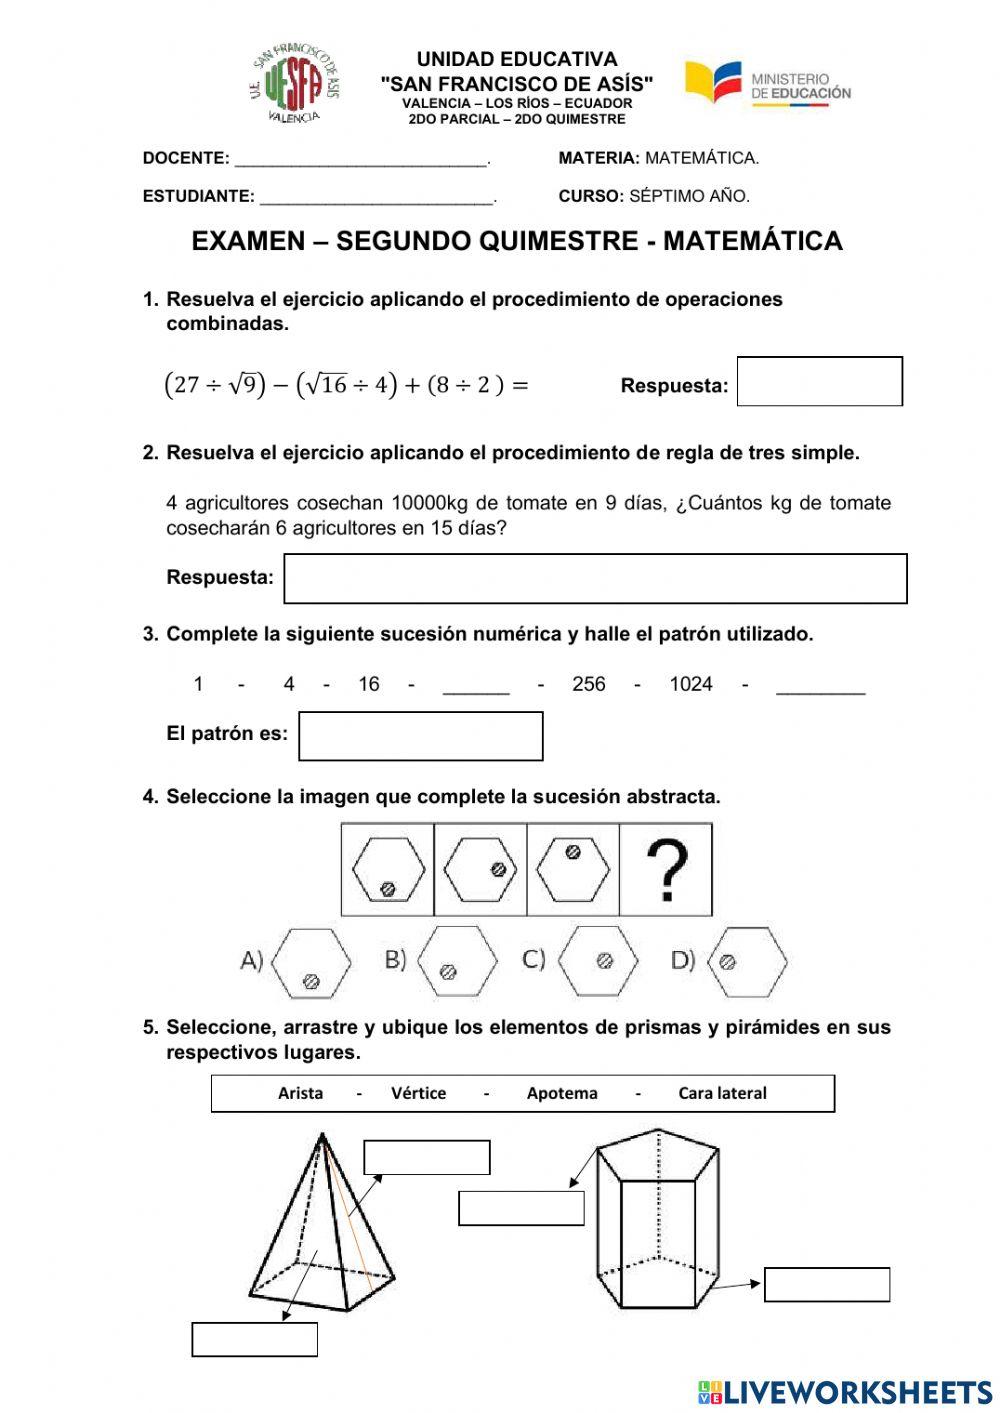 Examen - Segundo Quimestre - Matemática